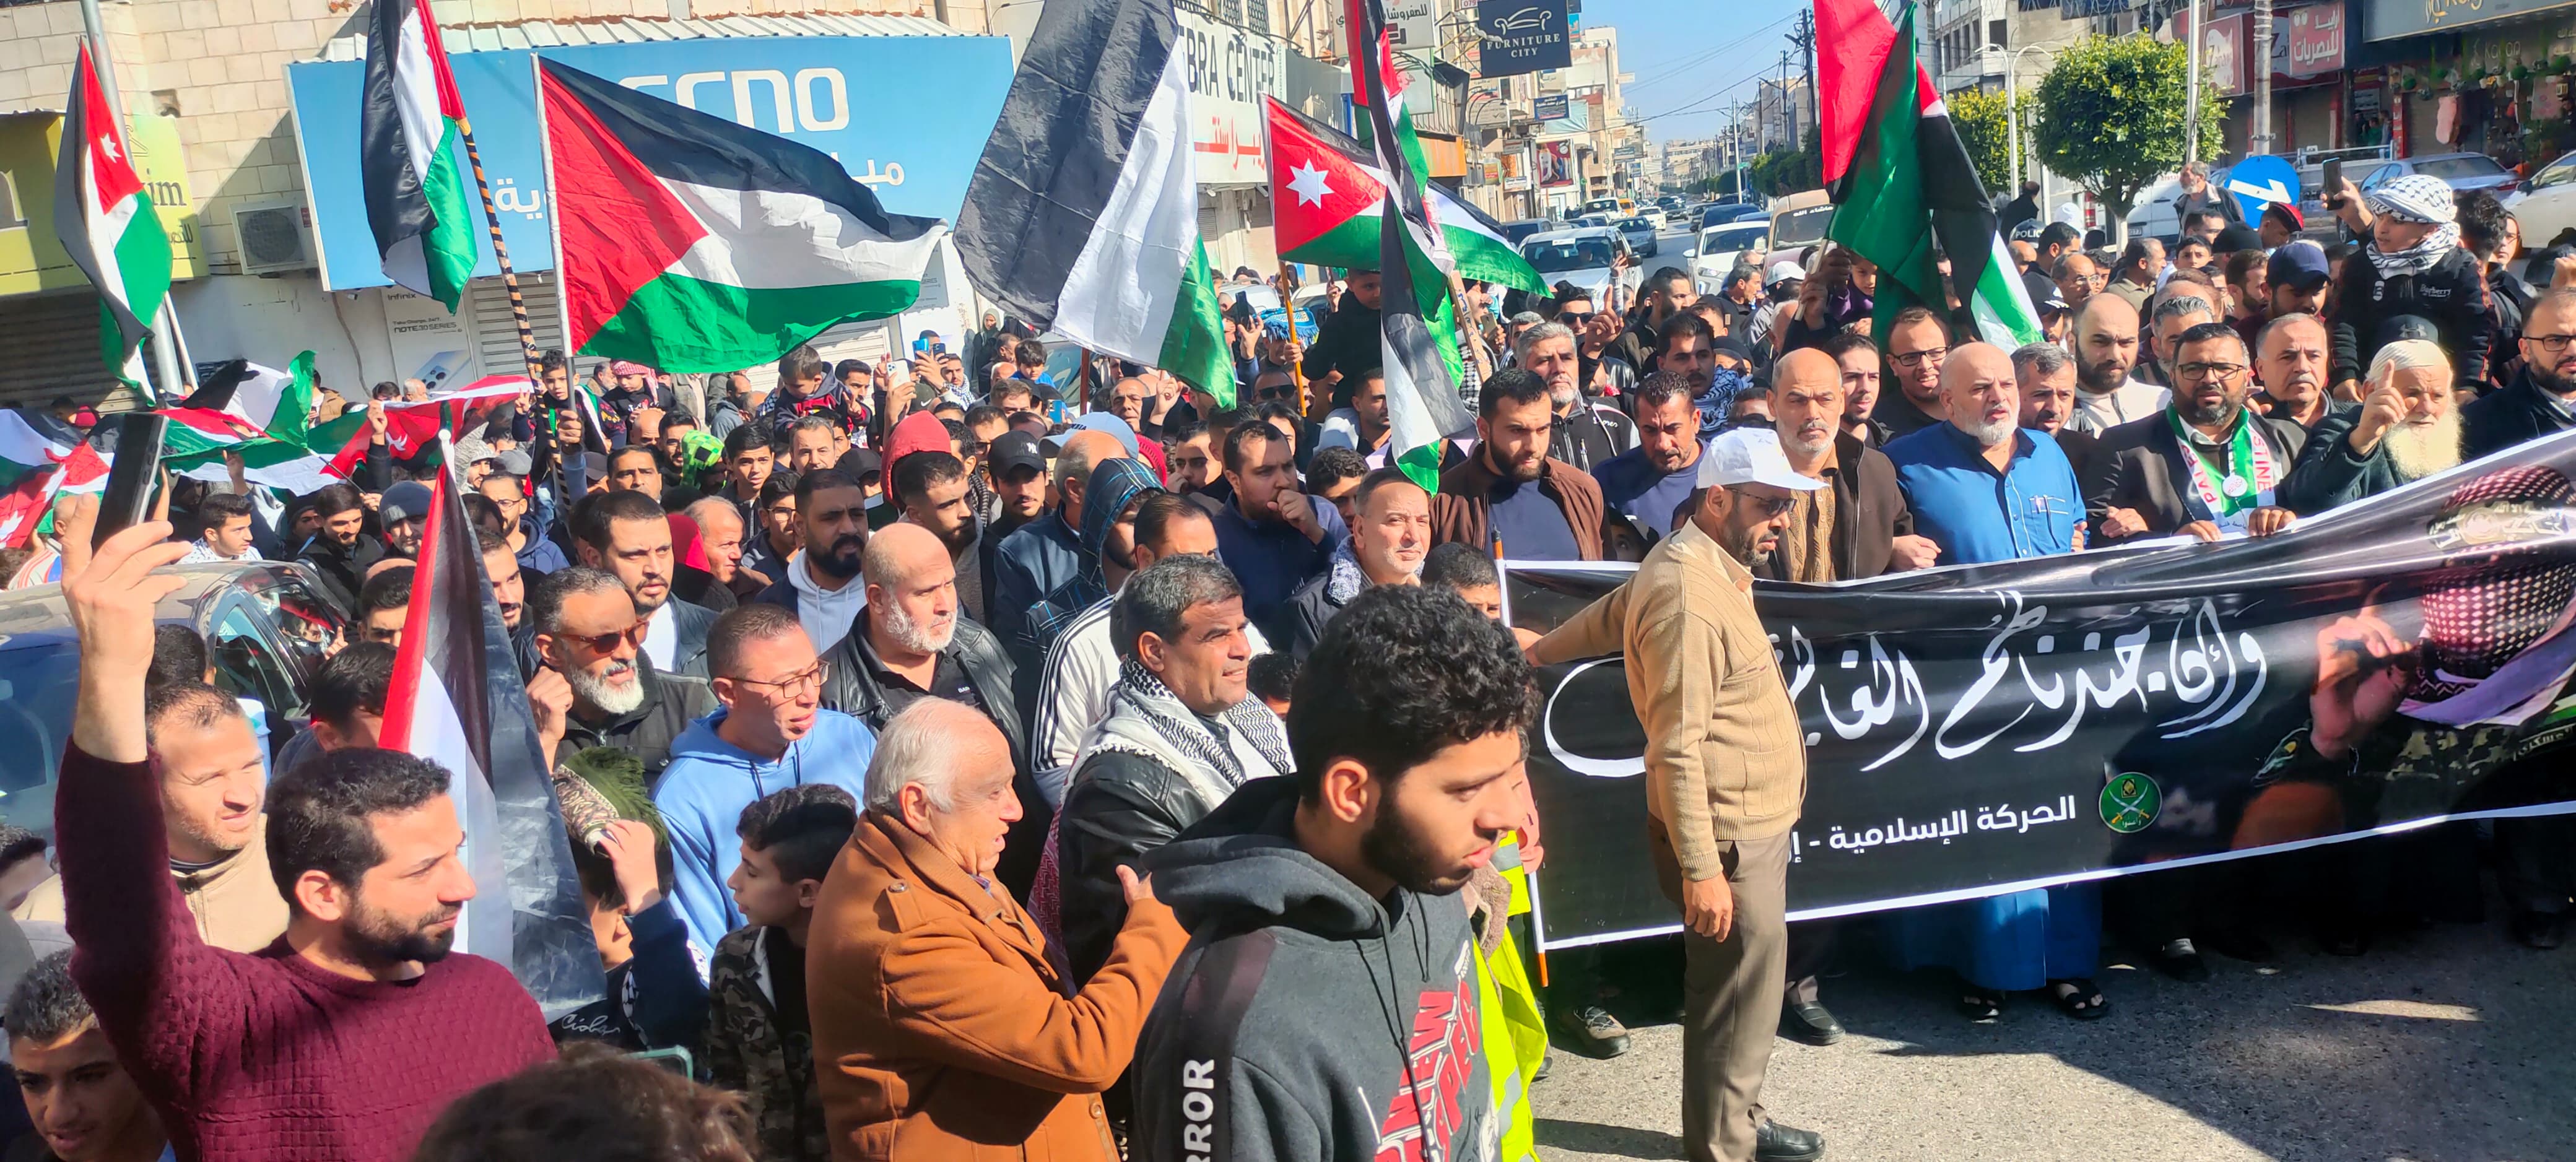 الآلاف في اربد يطالبون بوقف التطبيع ودعم المقاومة - صور